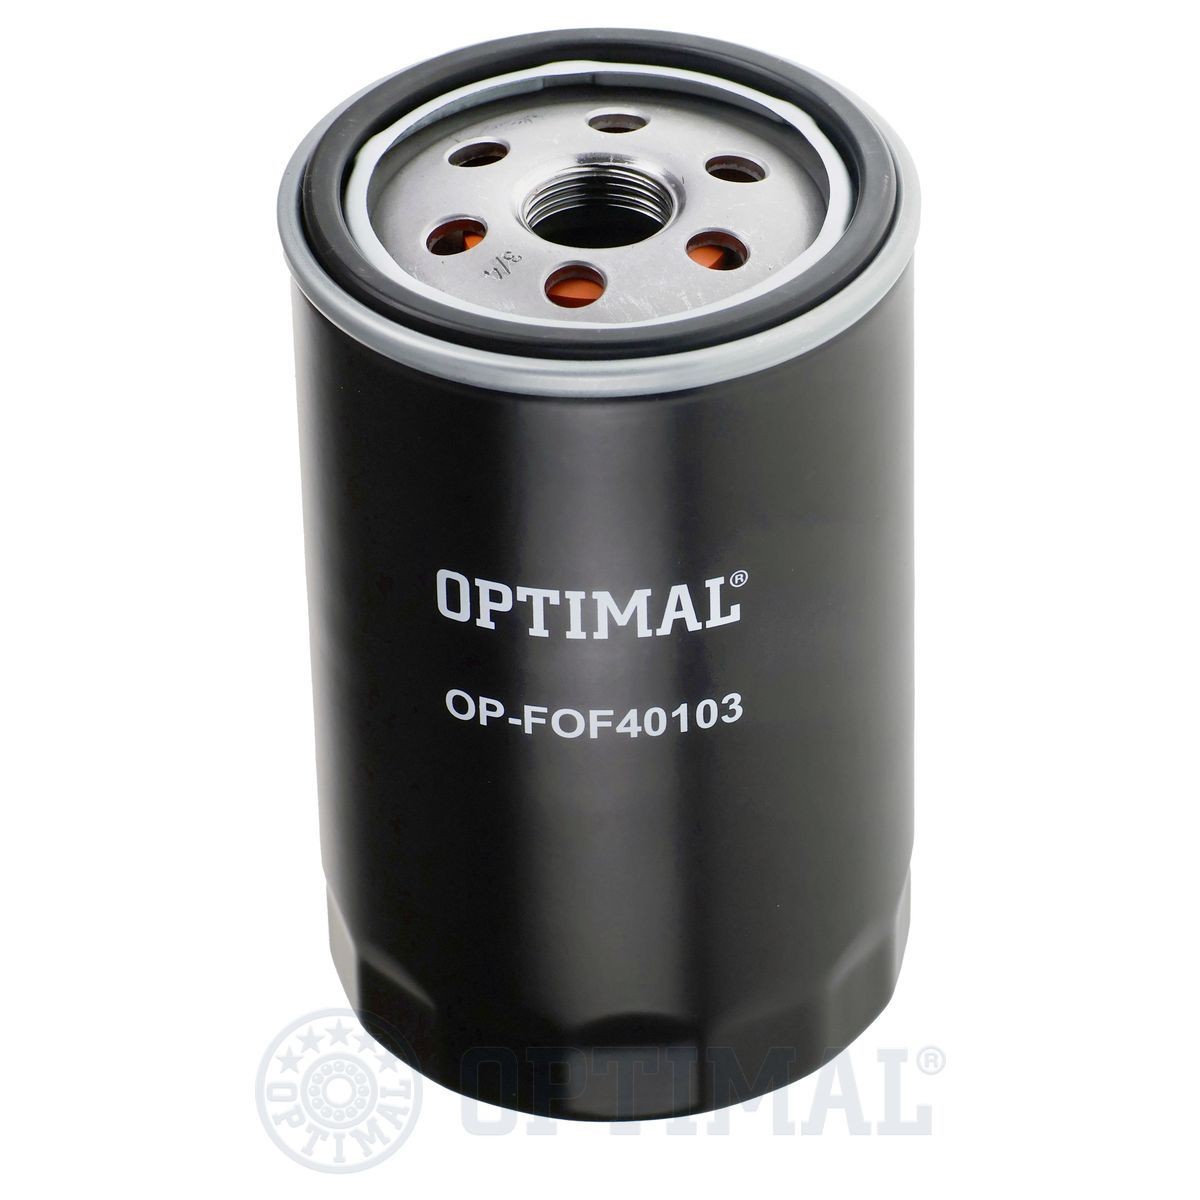 OPTIMAL OP-FOF40103 Oil filter K4781452AA